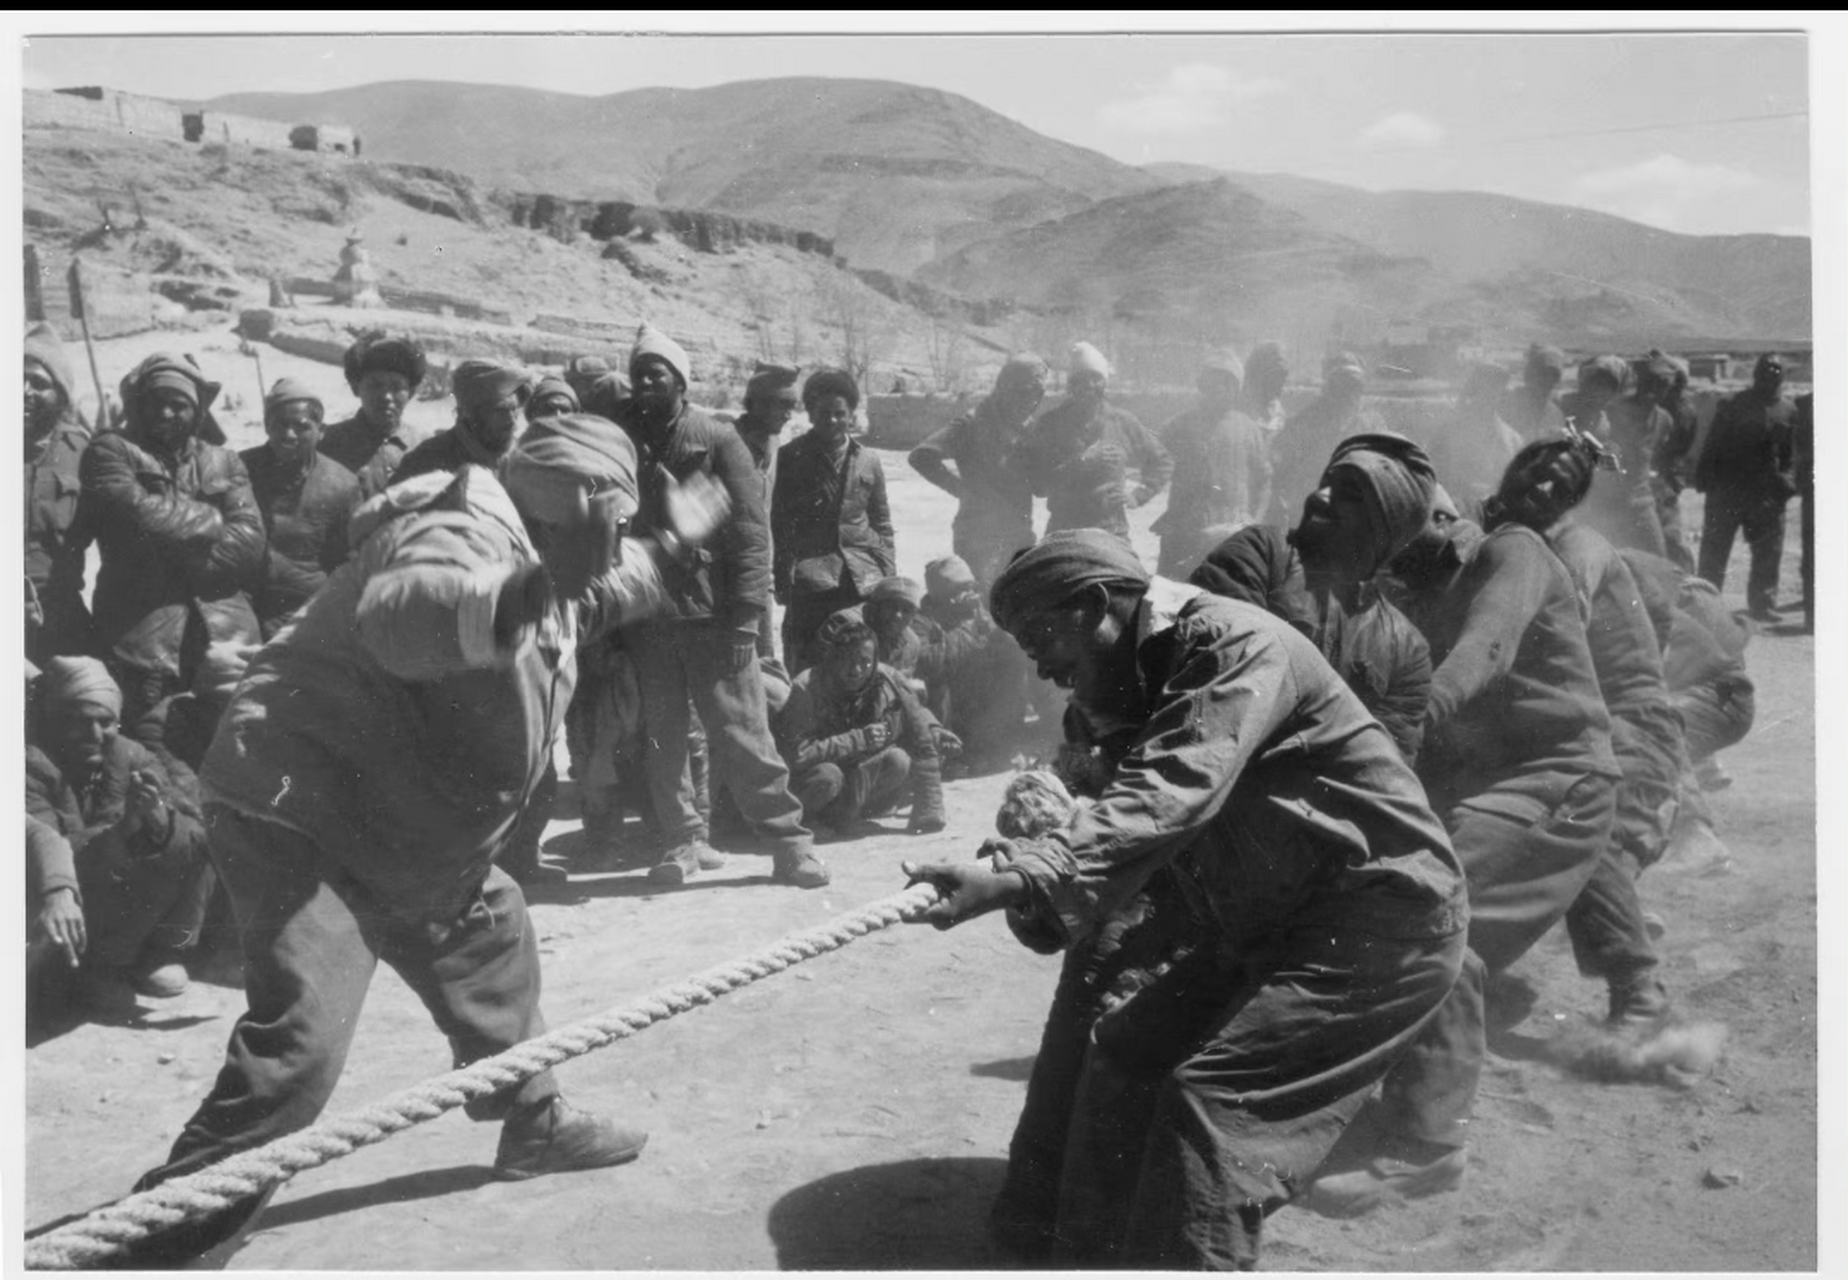 1962年对印自卫反击战期间,被俘的印度士兵在位于西藏的战俘营中进行